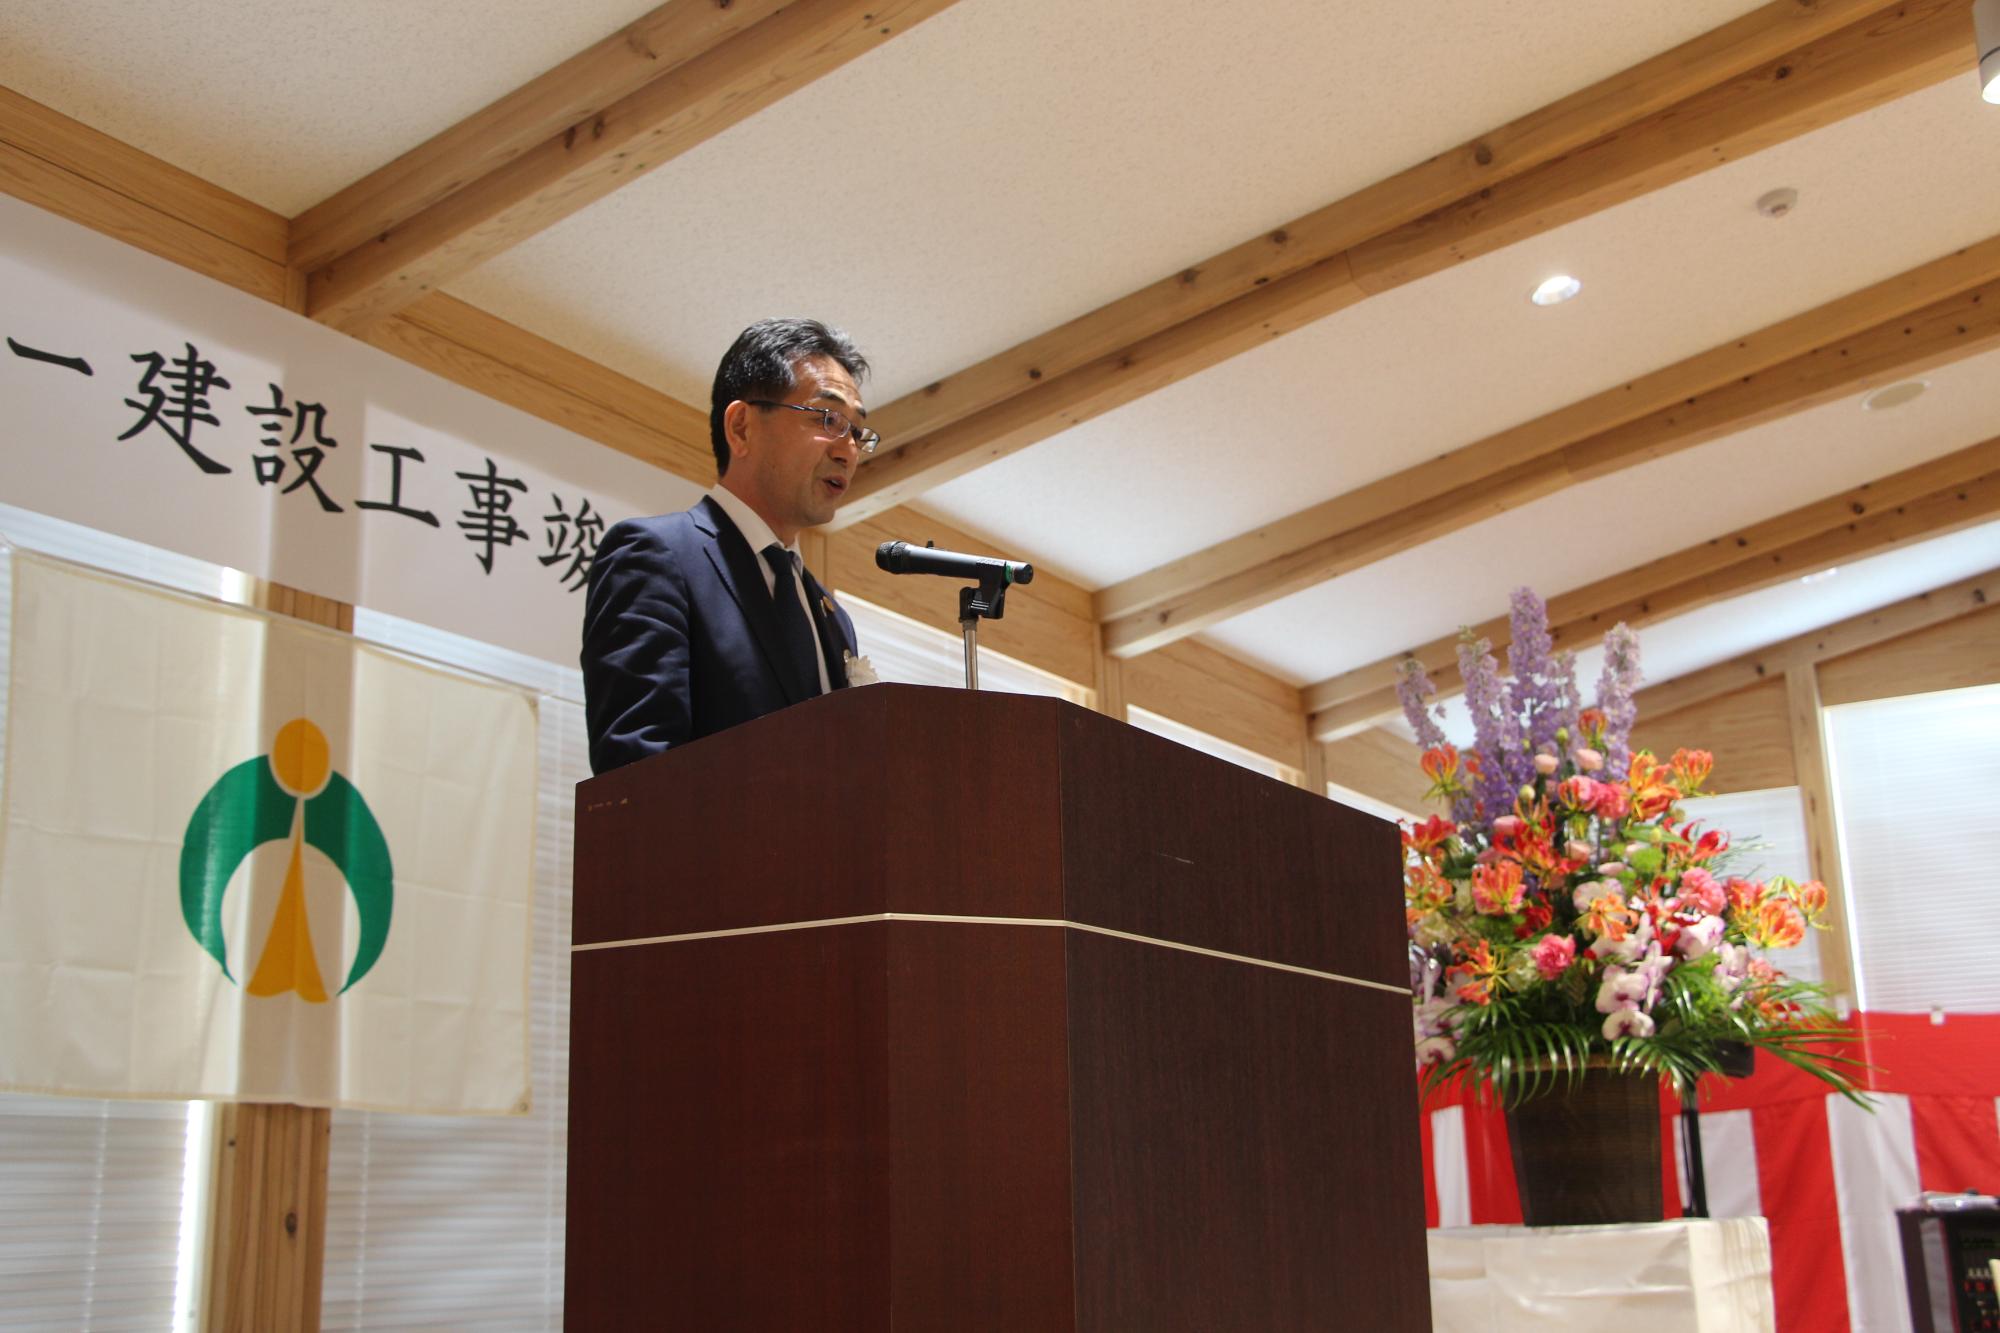 中村副市長が縁台で竣工式開式の宣言をしている写真